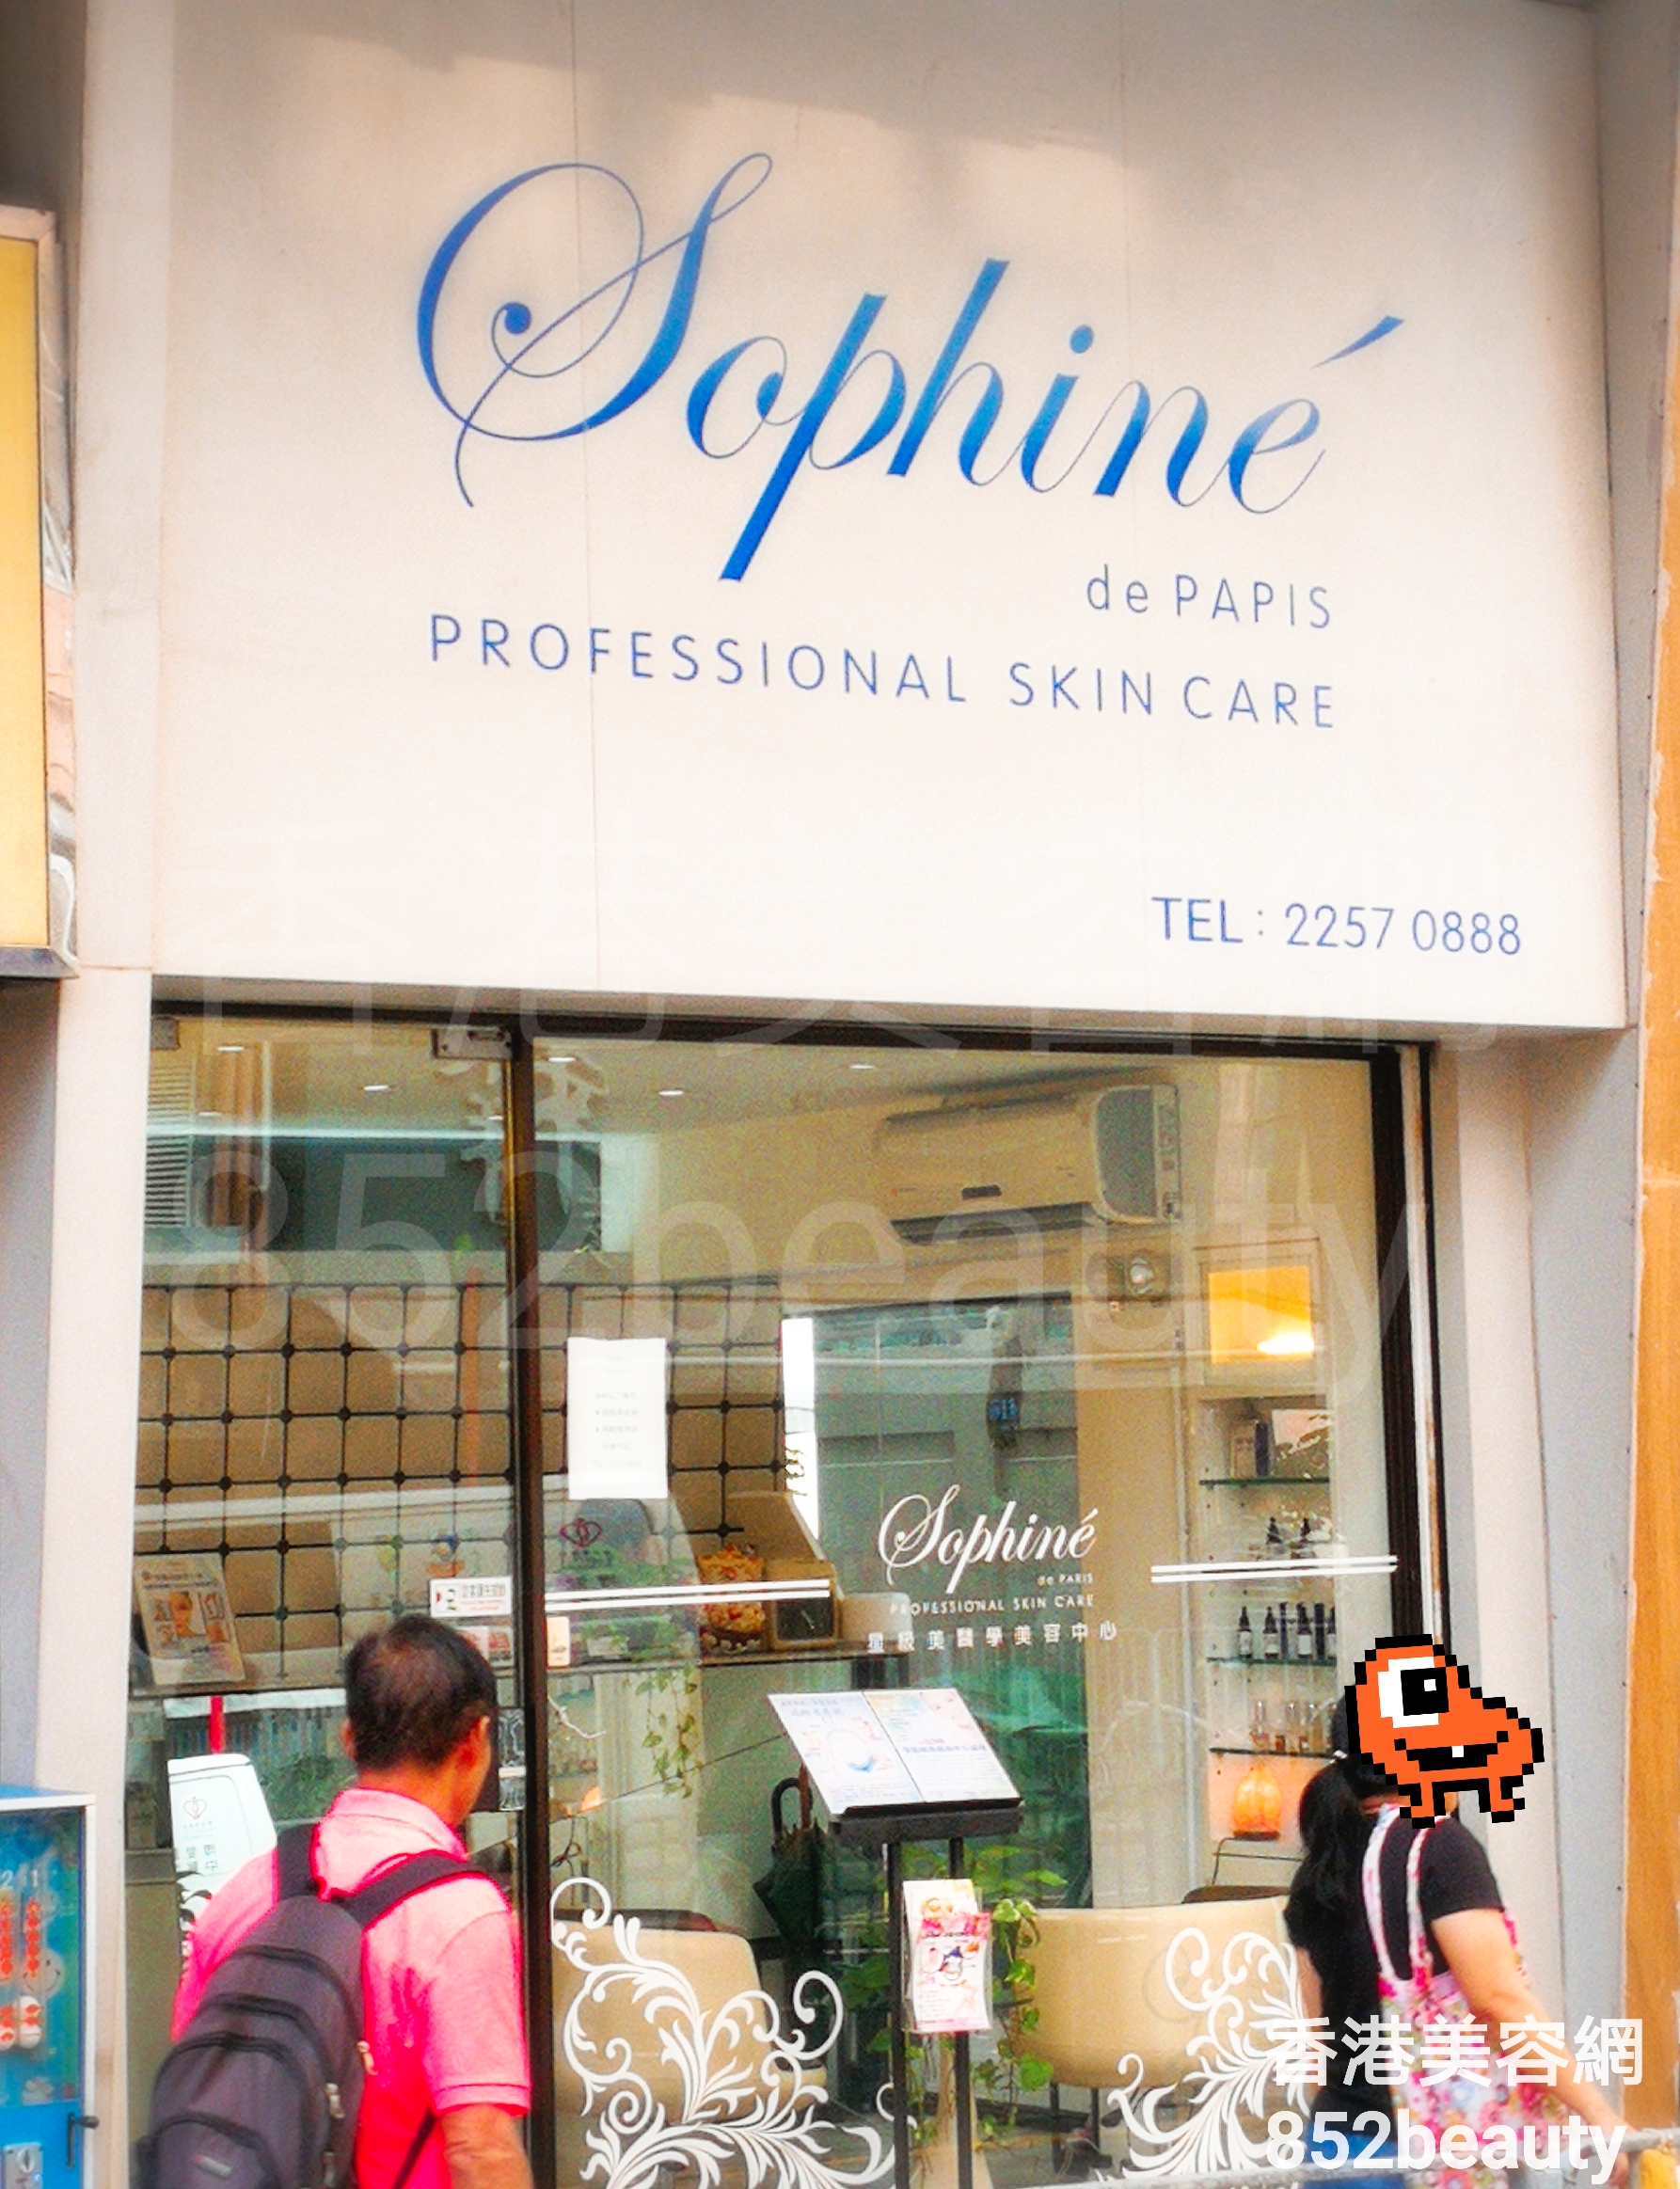 美容院: Sophine de PARIS 星級美醫學美容中心